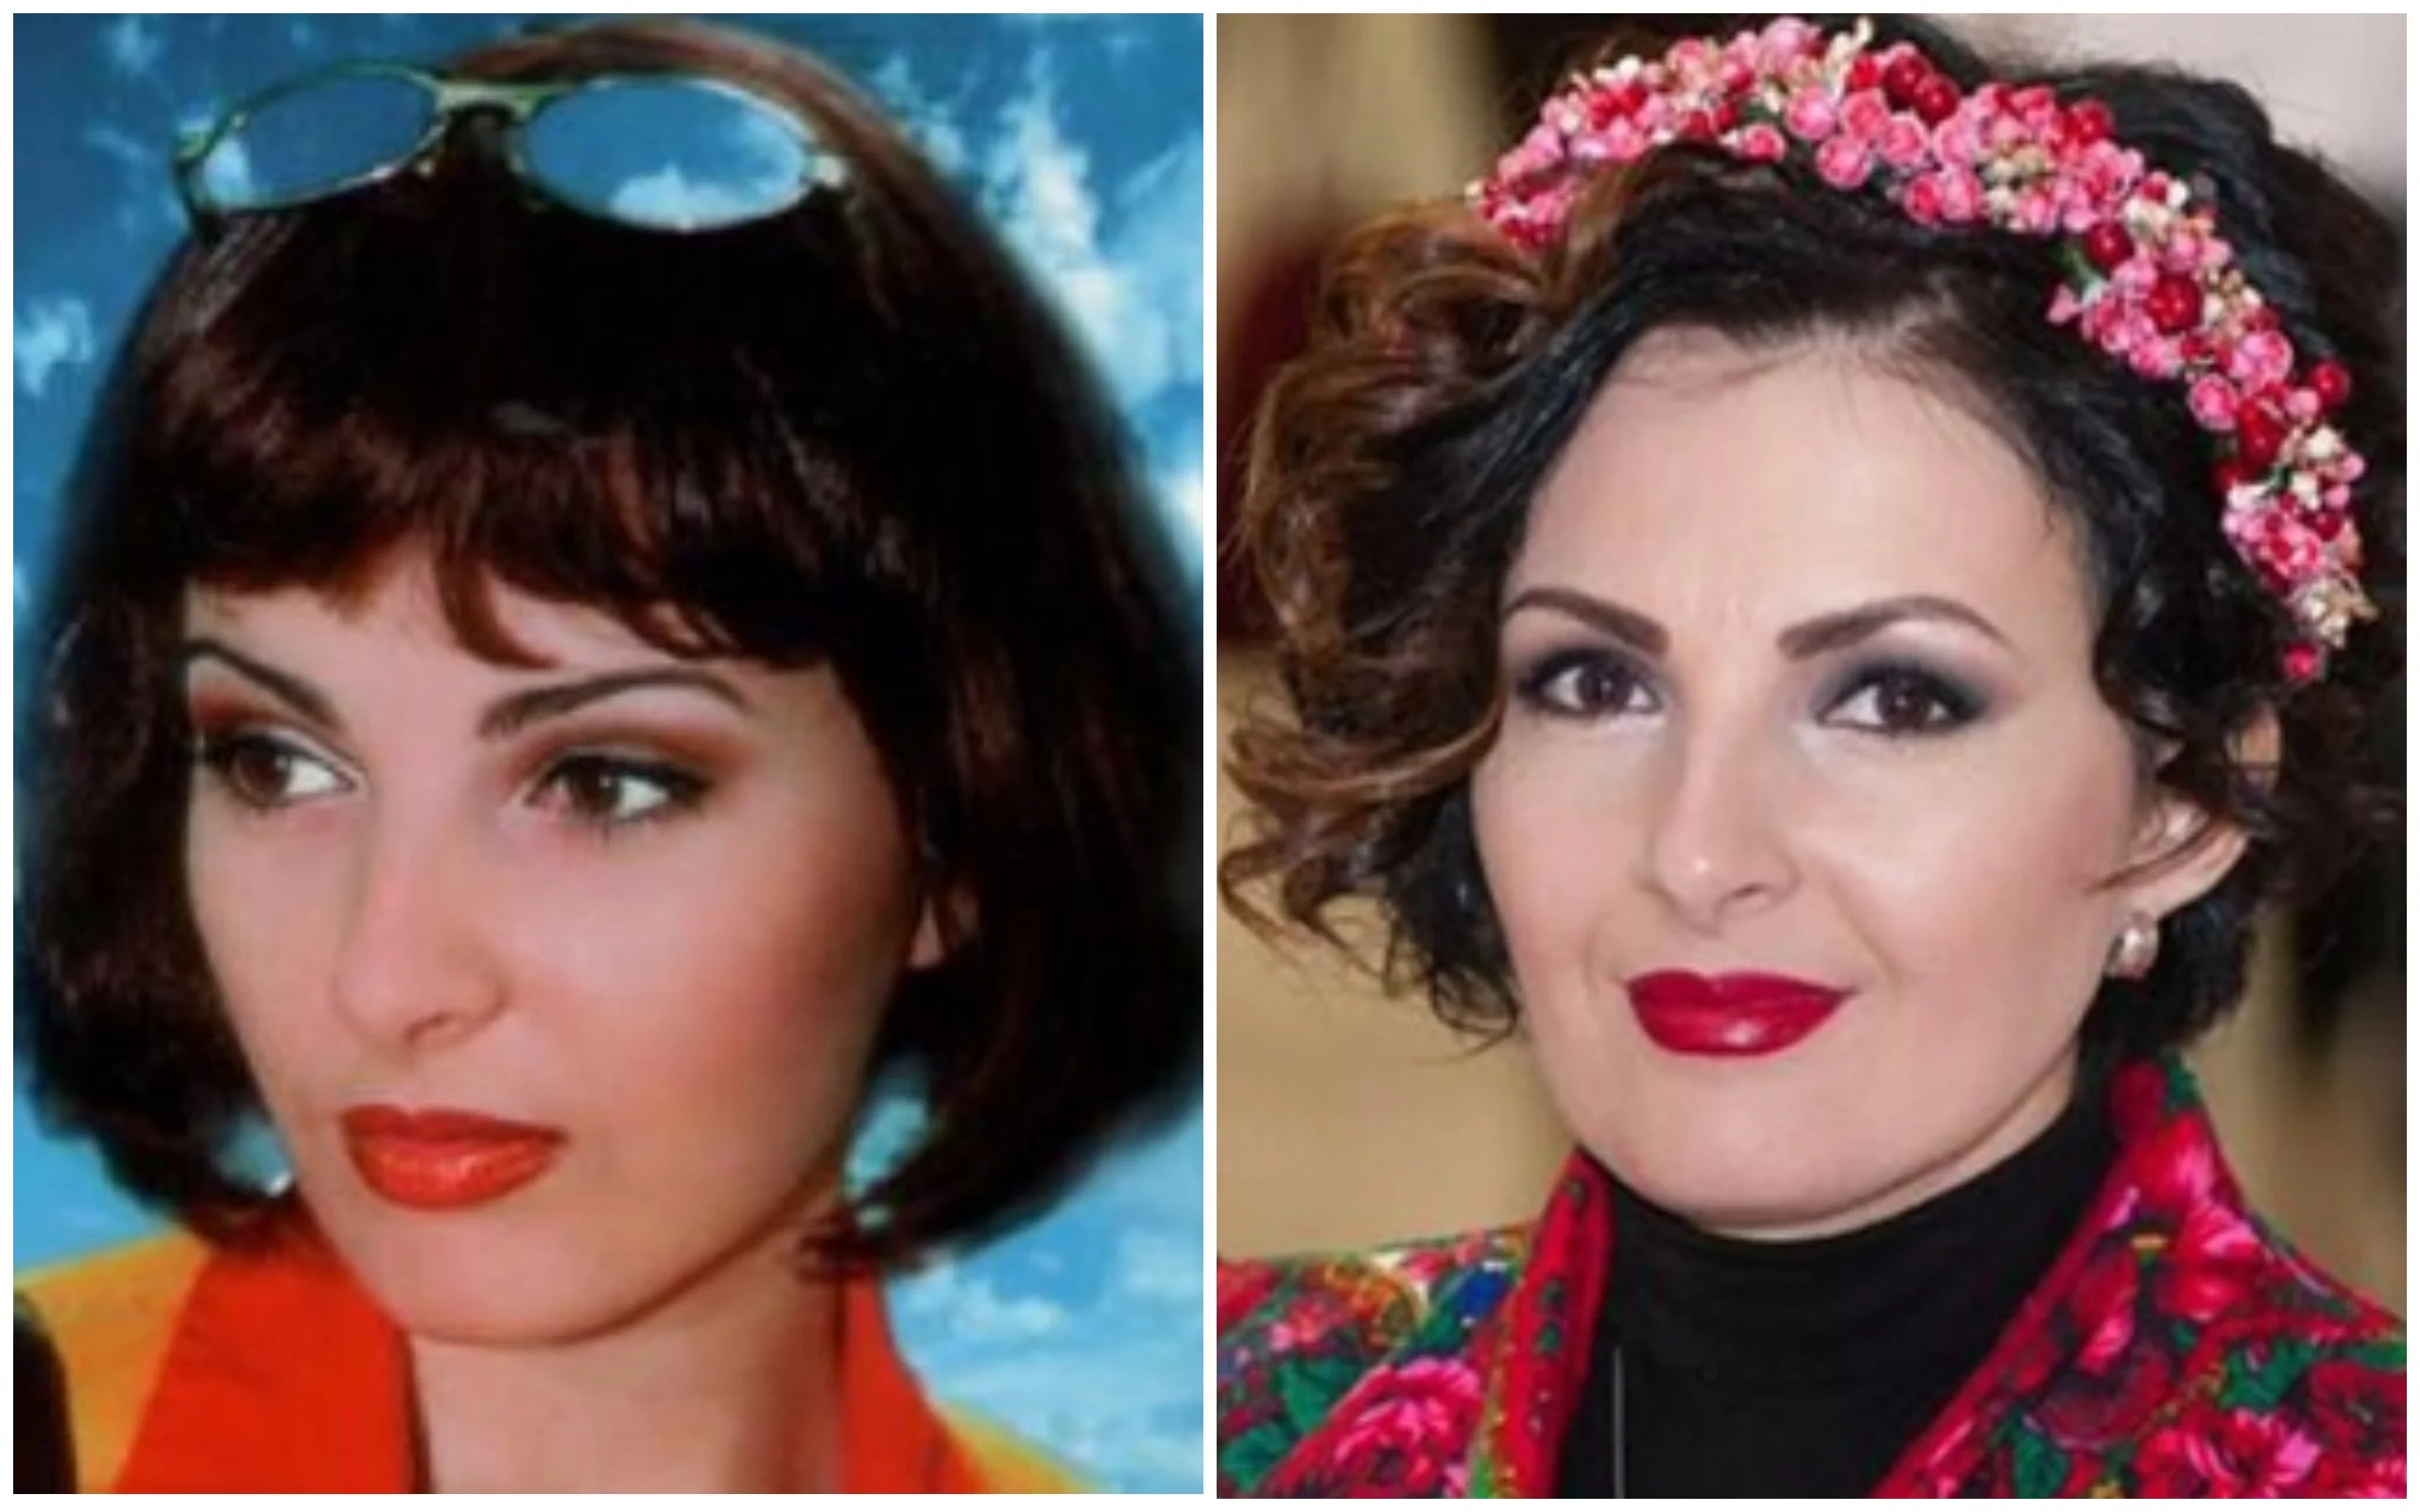 Тогда и сейчас: как с возрастом изменились украинские певцы 90-х - фото 394885